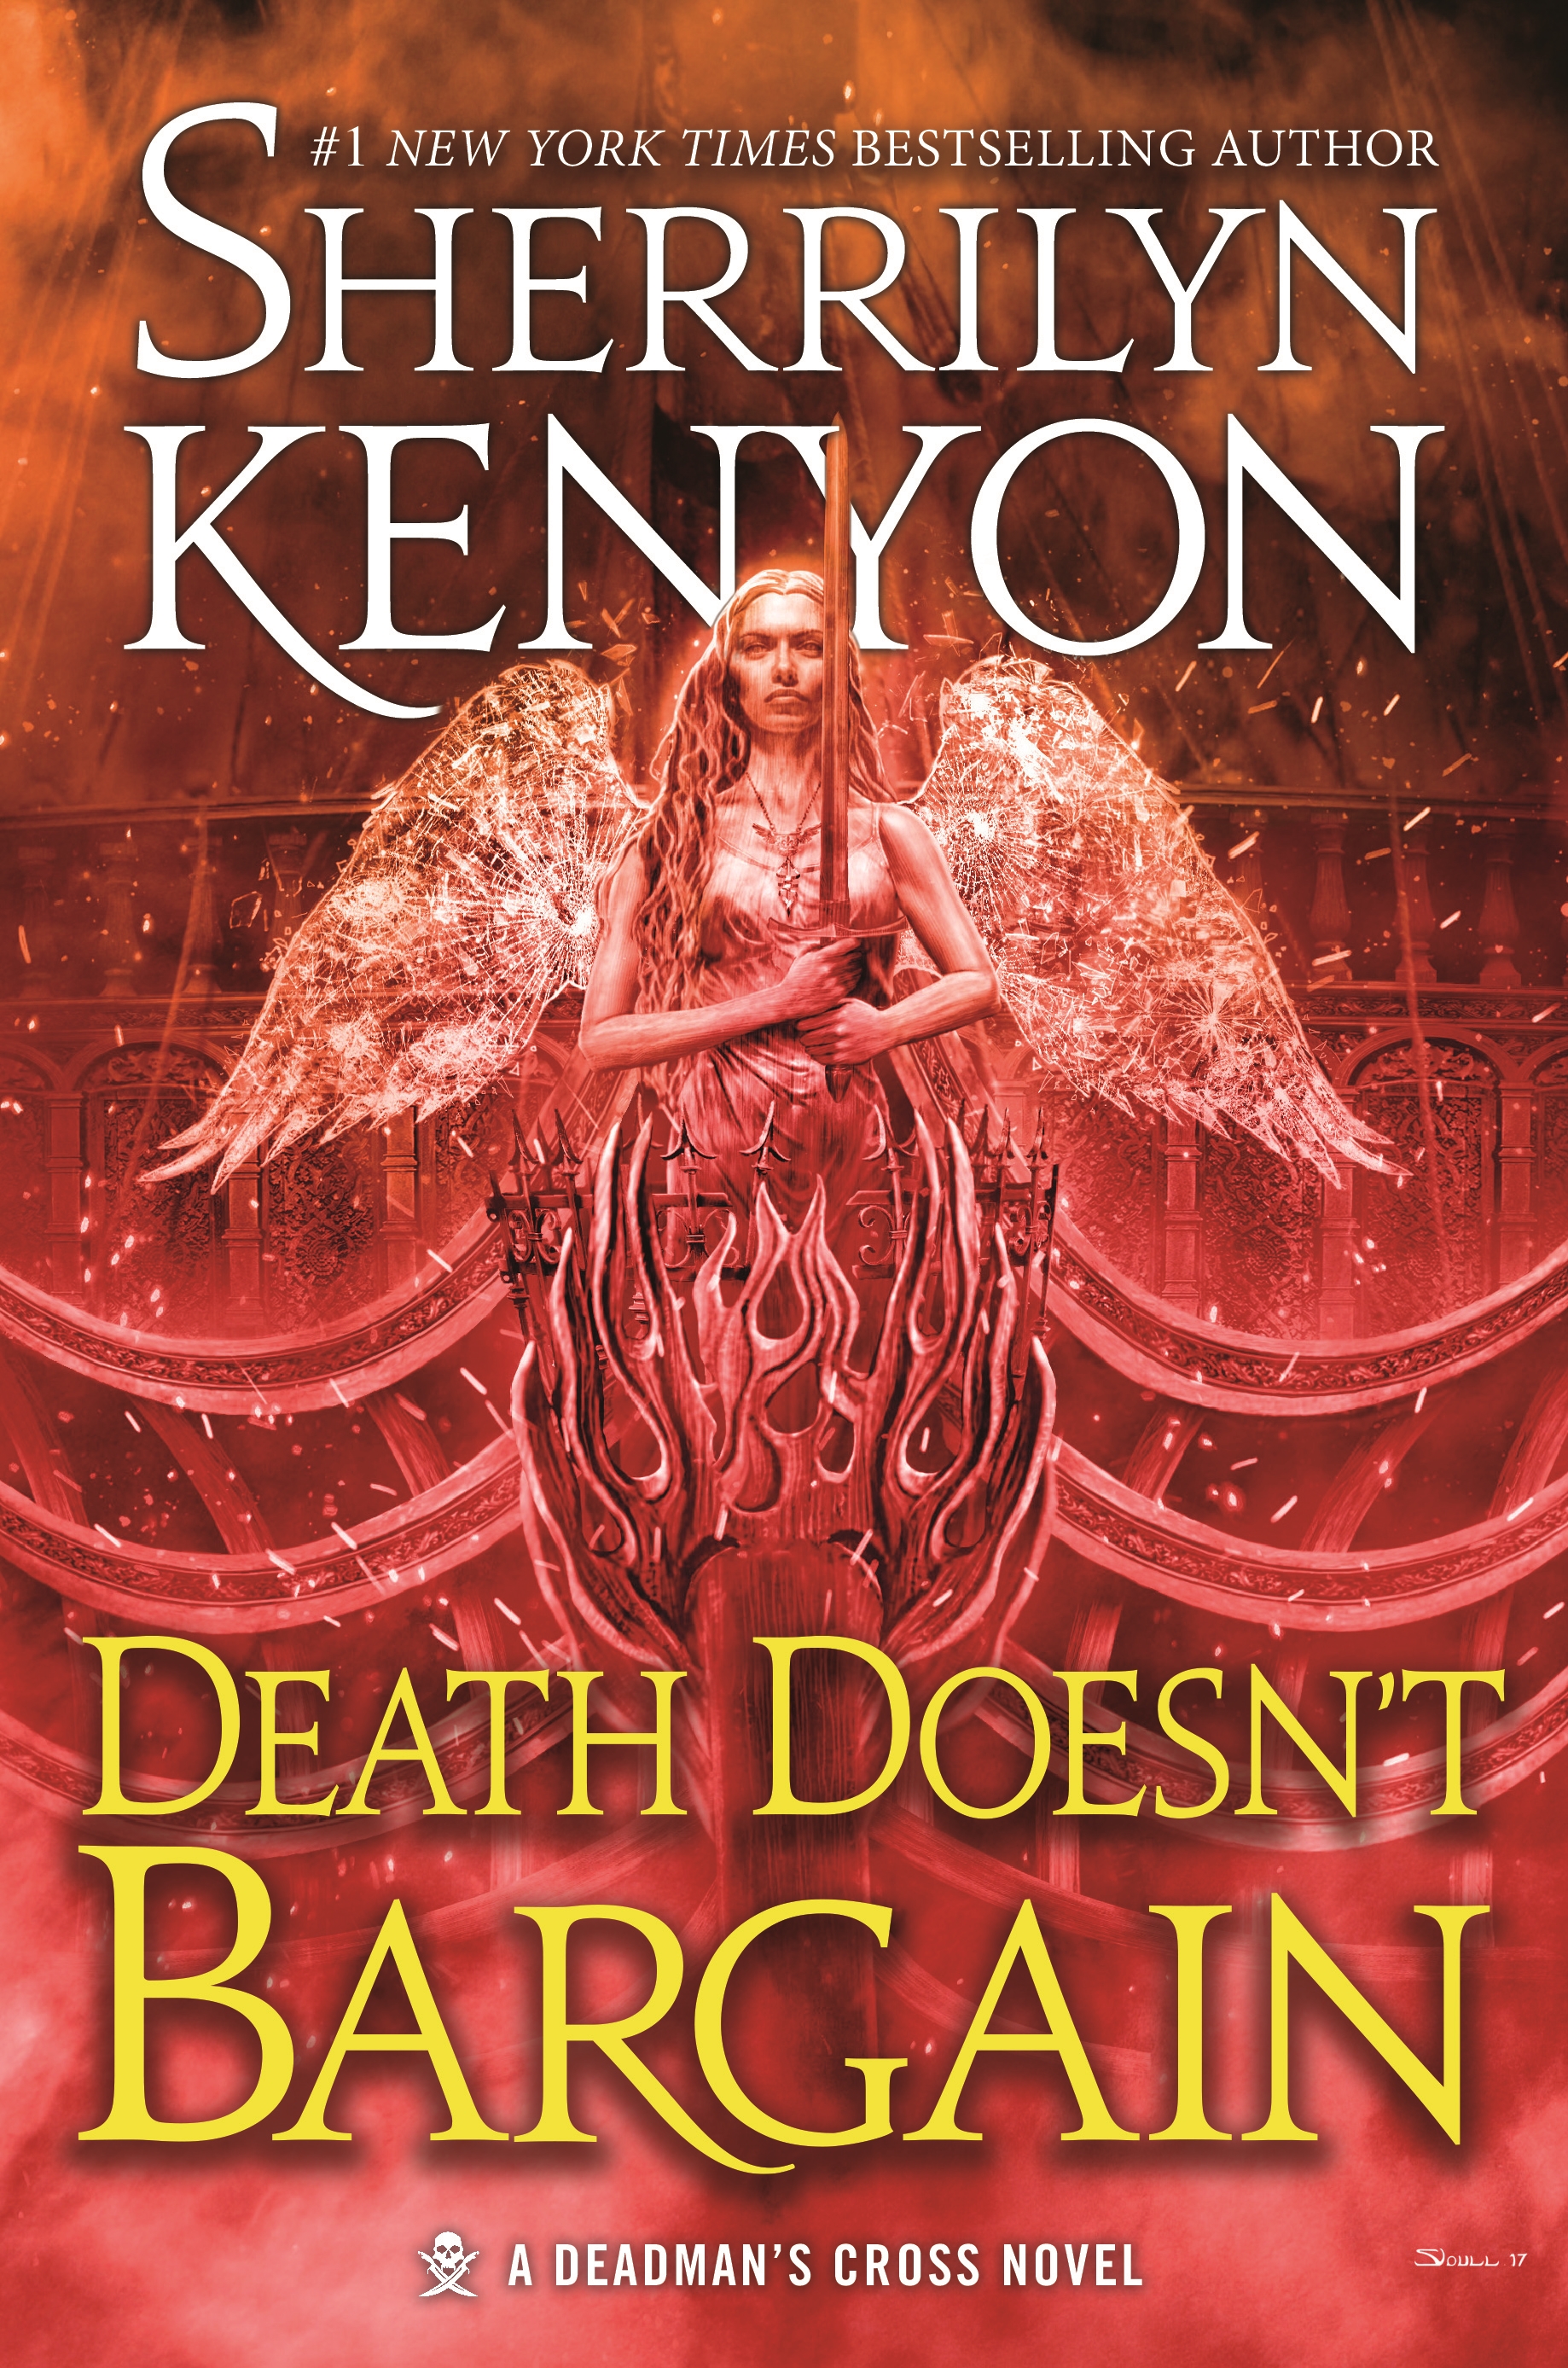 Death Doesn't Bargain : A Deadman's Cross Novel by Sherrilyn Kenyon